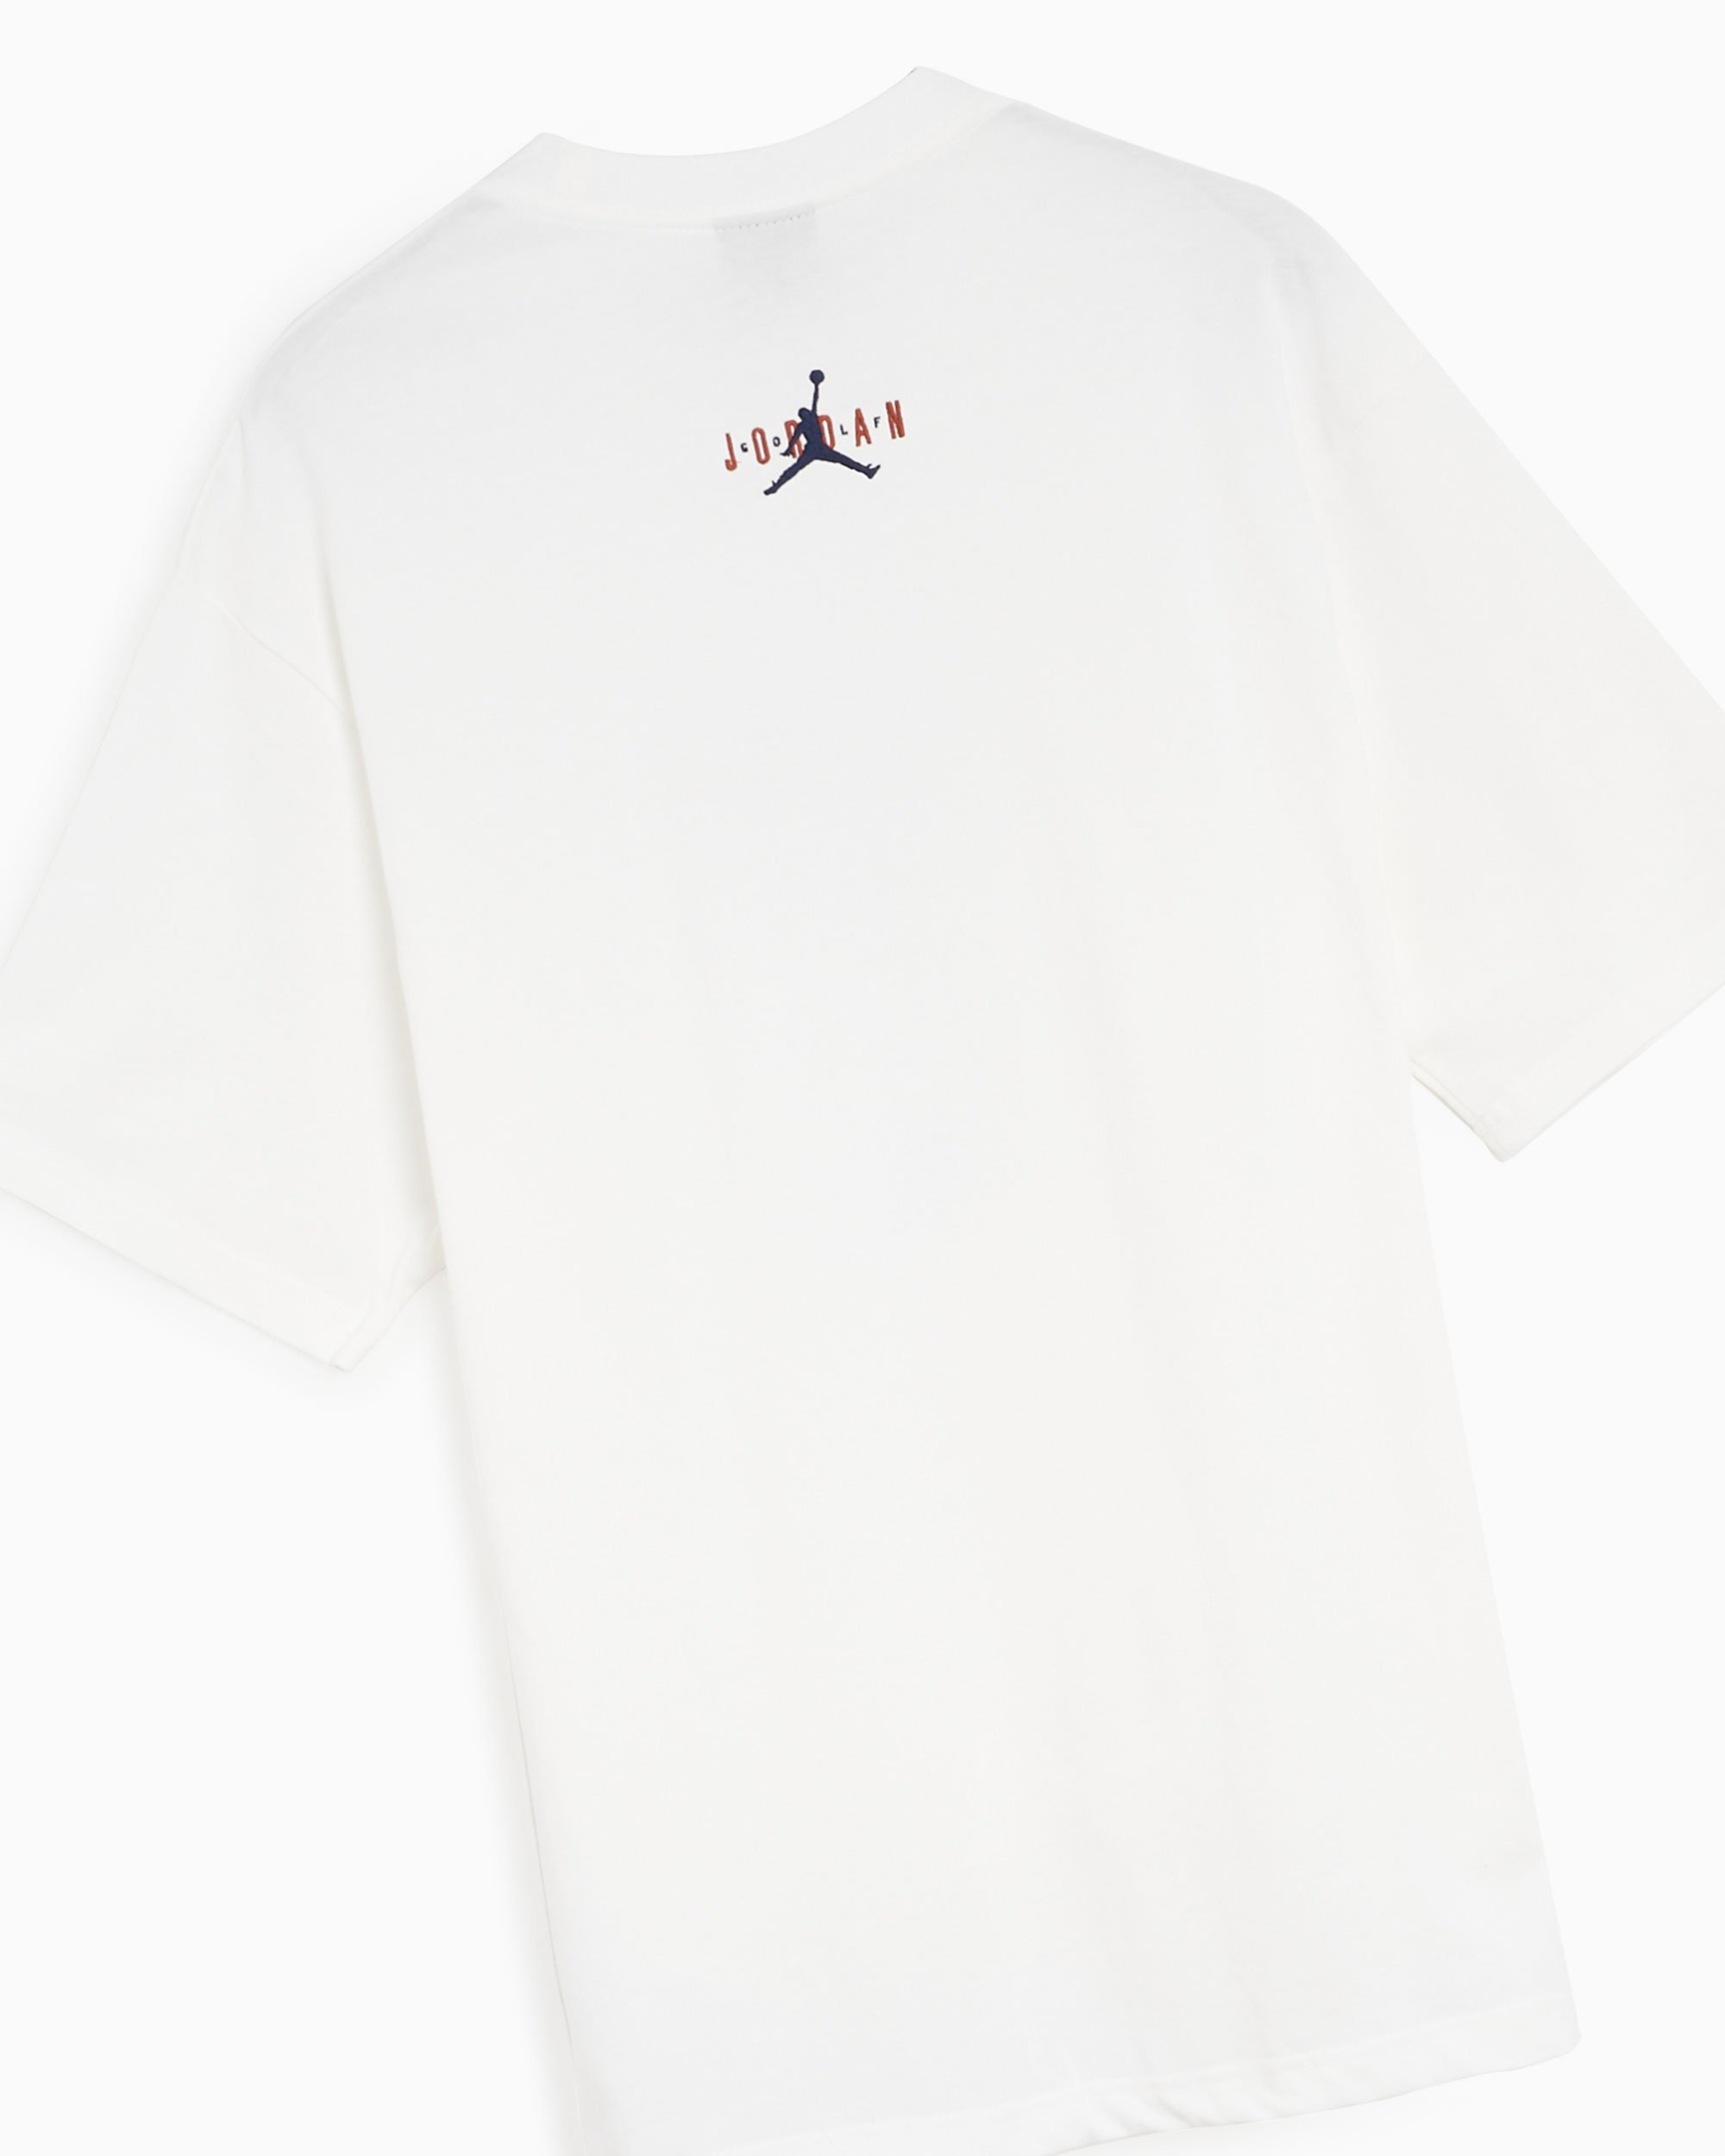 Jordan x Eastside Golf Men's T-Shirt White DV1890-100| Buy Online